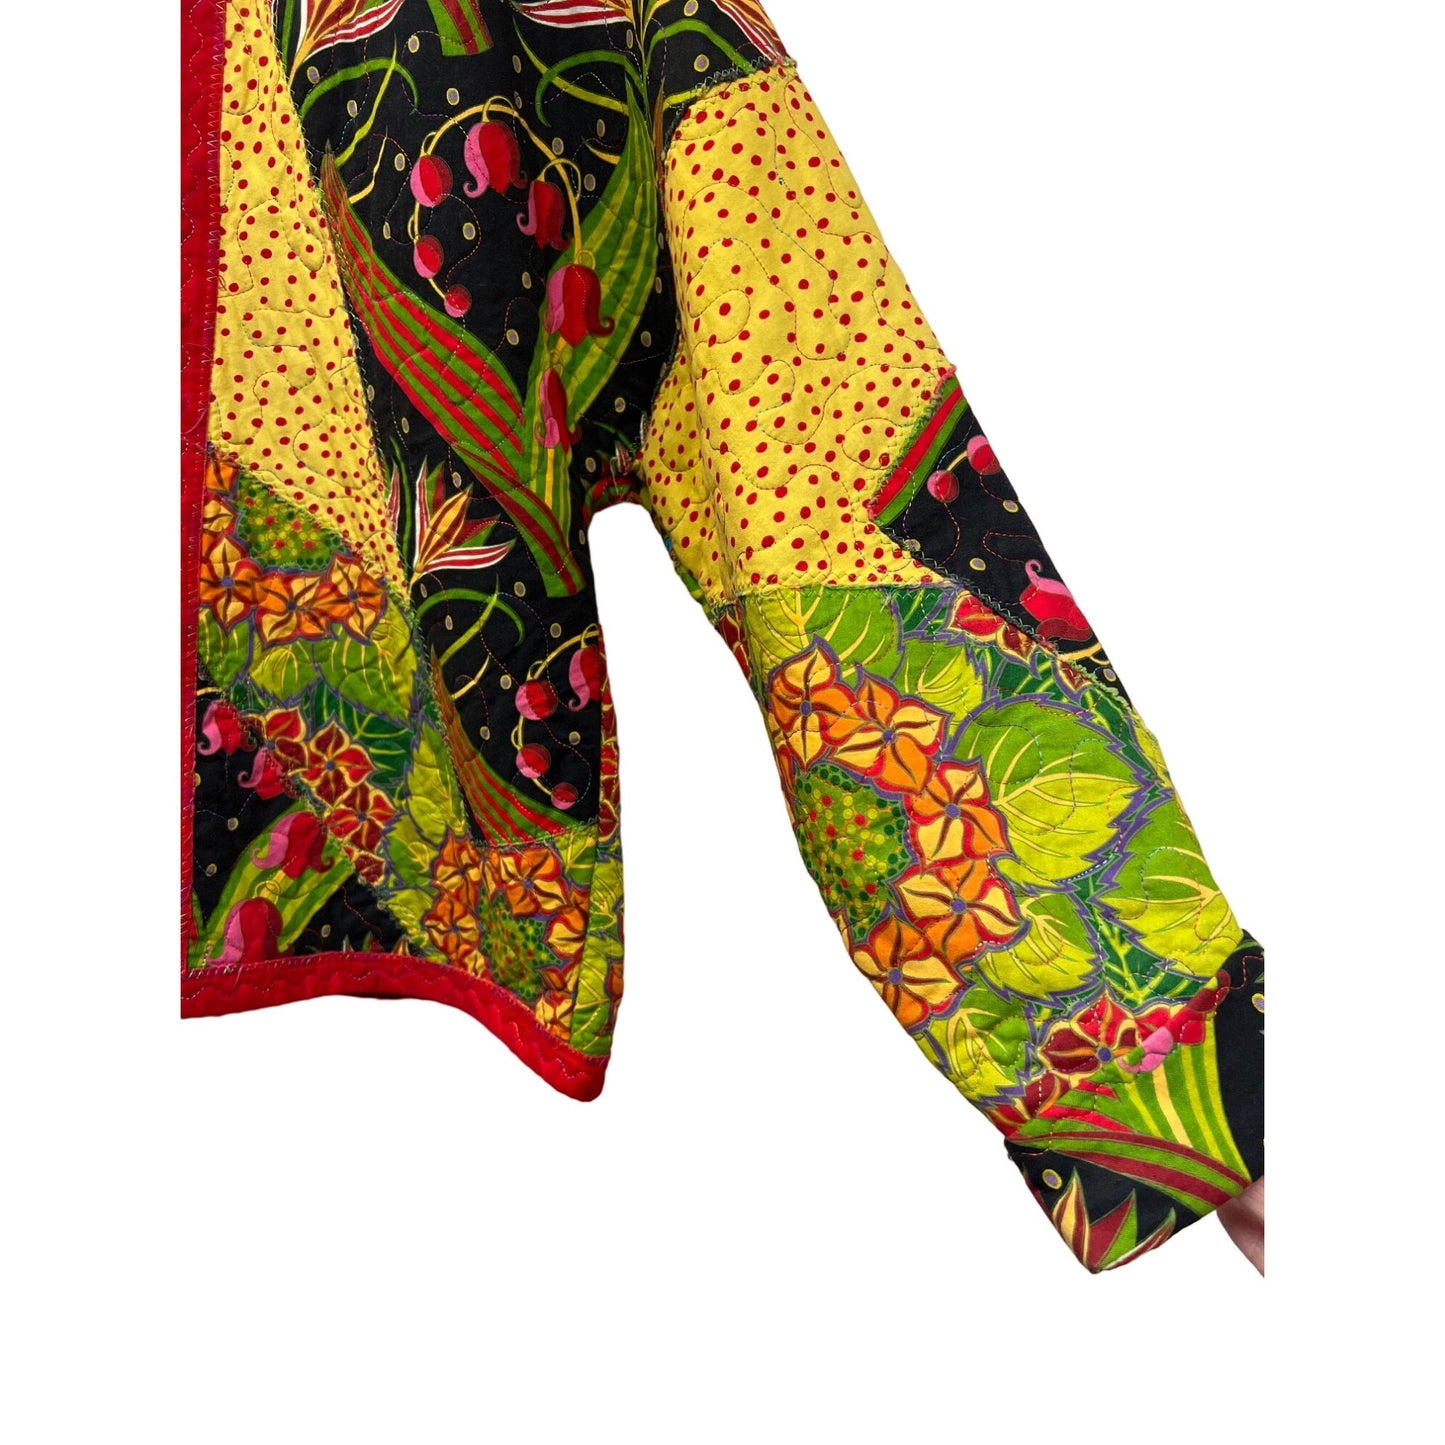 Pat Reynolds Design Handmade Floral Patchwork Quilted Jacket